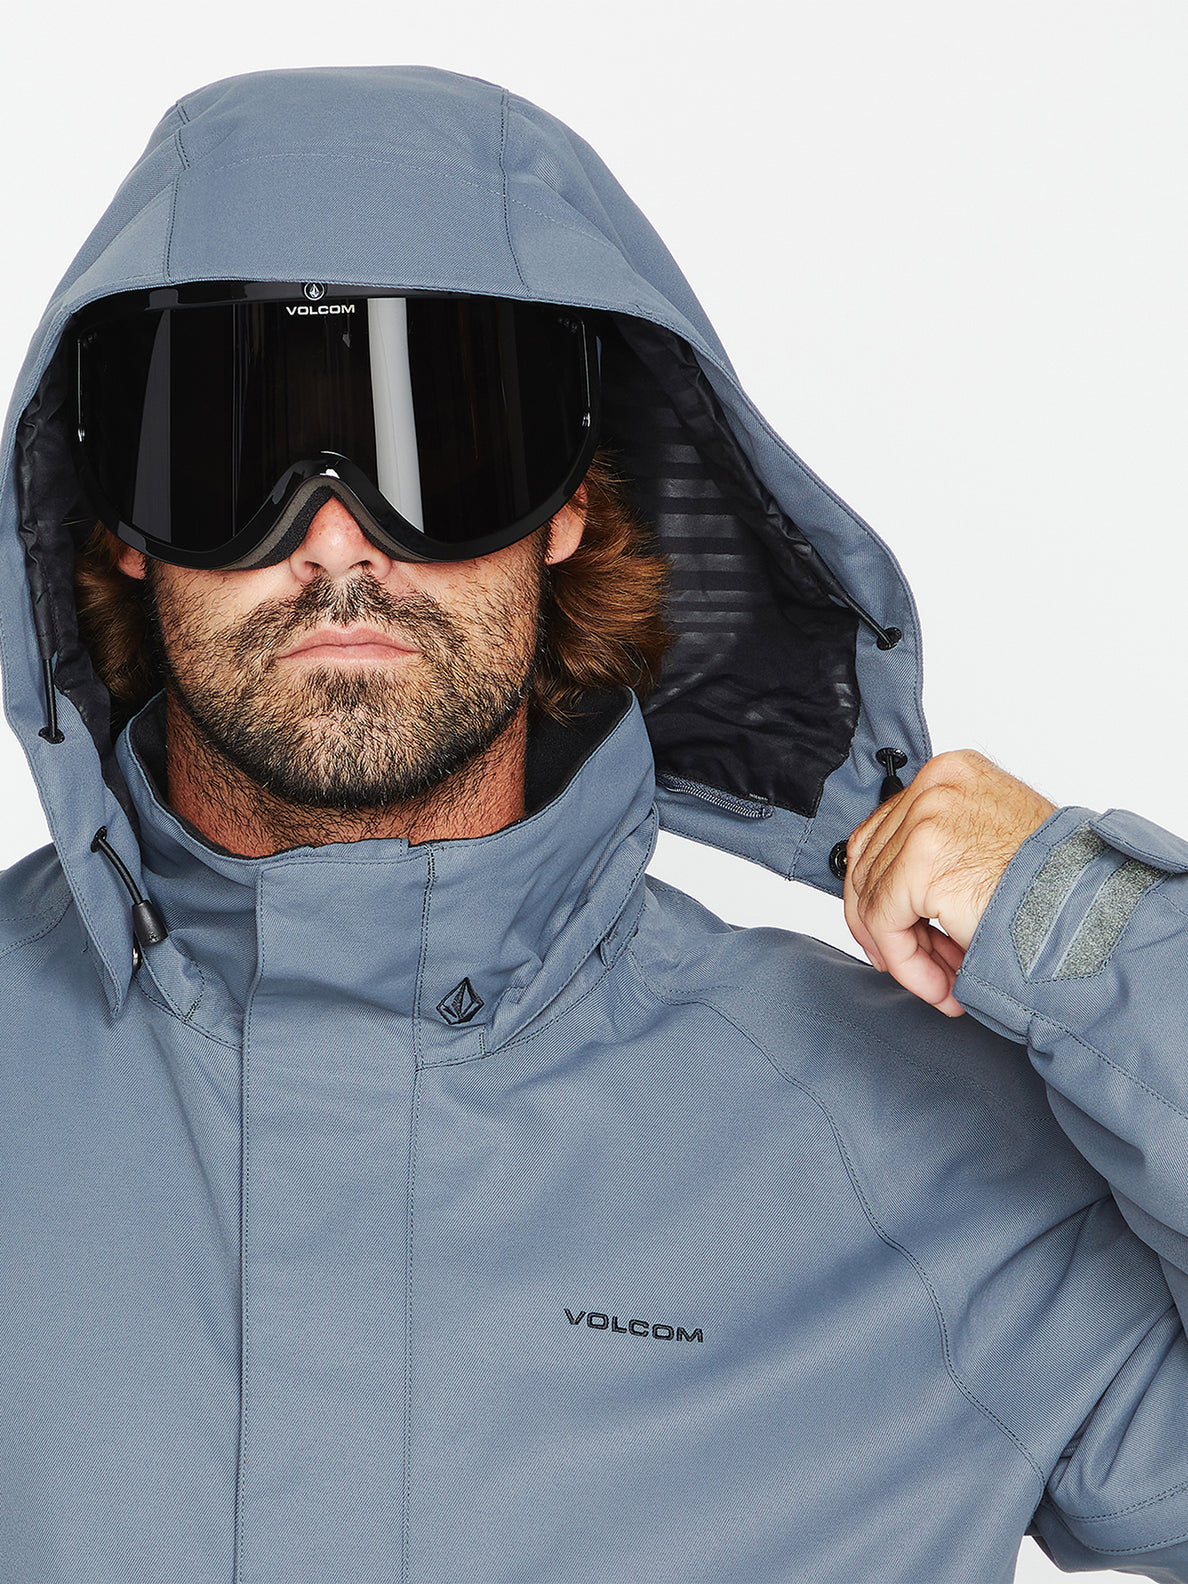 Volcom Iconic Stone Jacket Snowboardjacke – Dunkelgrau